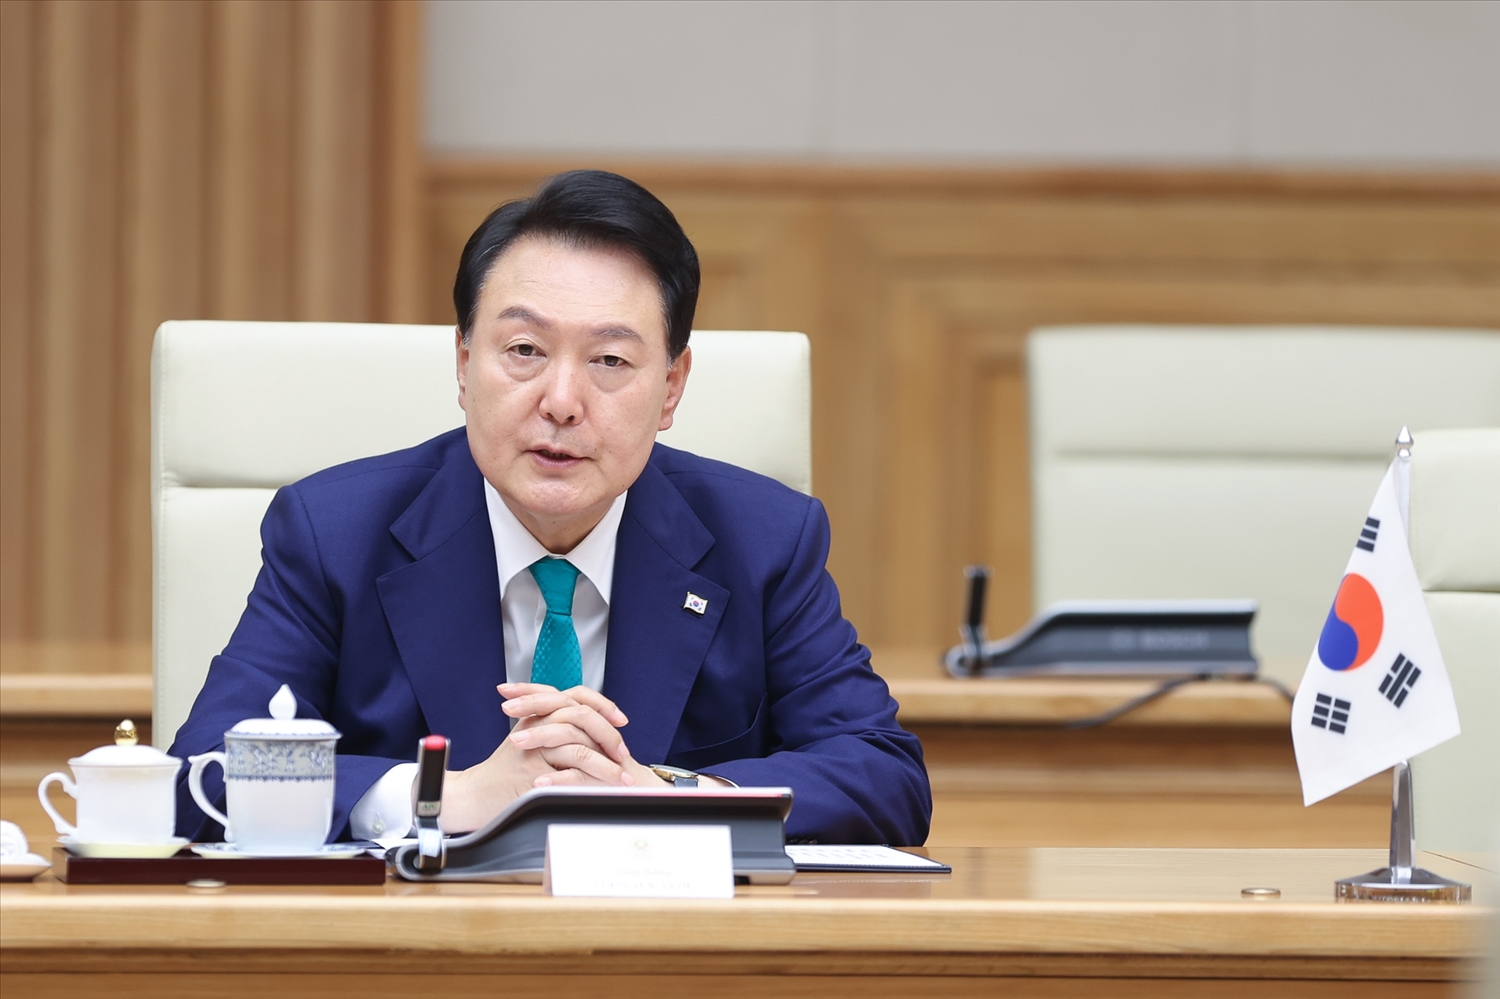 Tổng thống Yoon Suk Yeol khẳng định, Chính phủ Hàn Quốc sẽ tiếp tục khuyến khích, tạo điều kiện cho doanh nghiệp Hàn Quốc đầu tư vào Việt Nam - Ảnh: VGP/Nhật Bắc